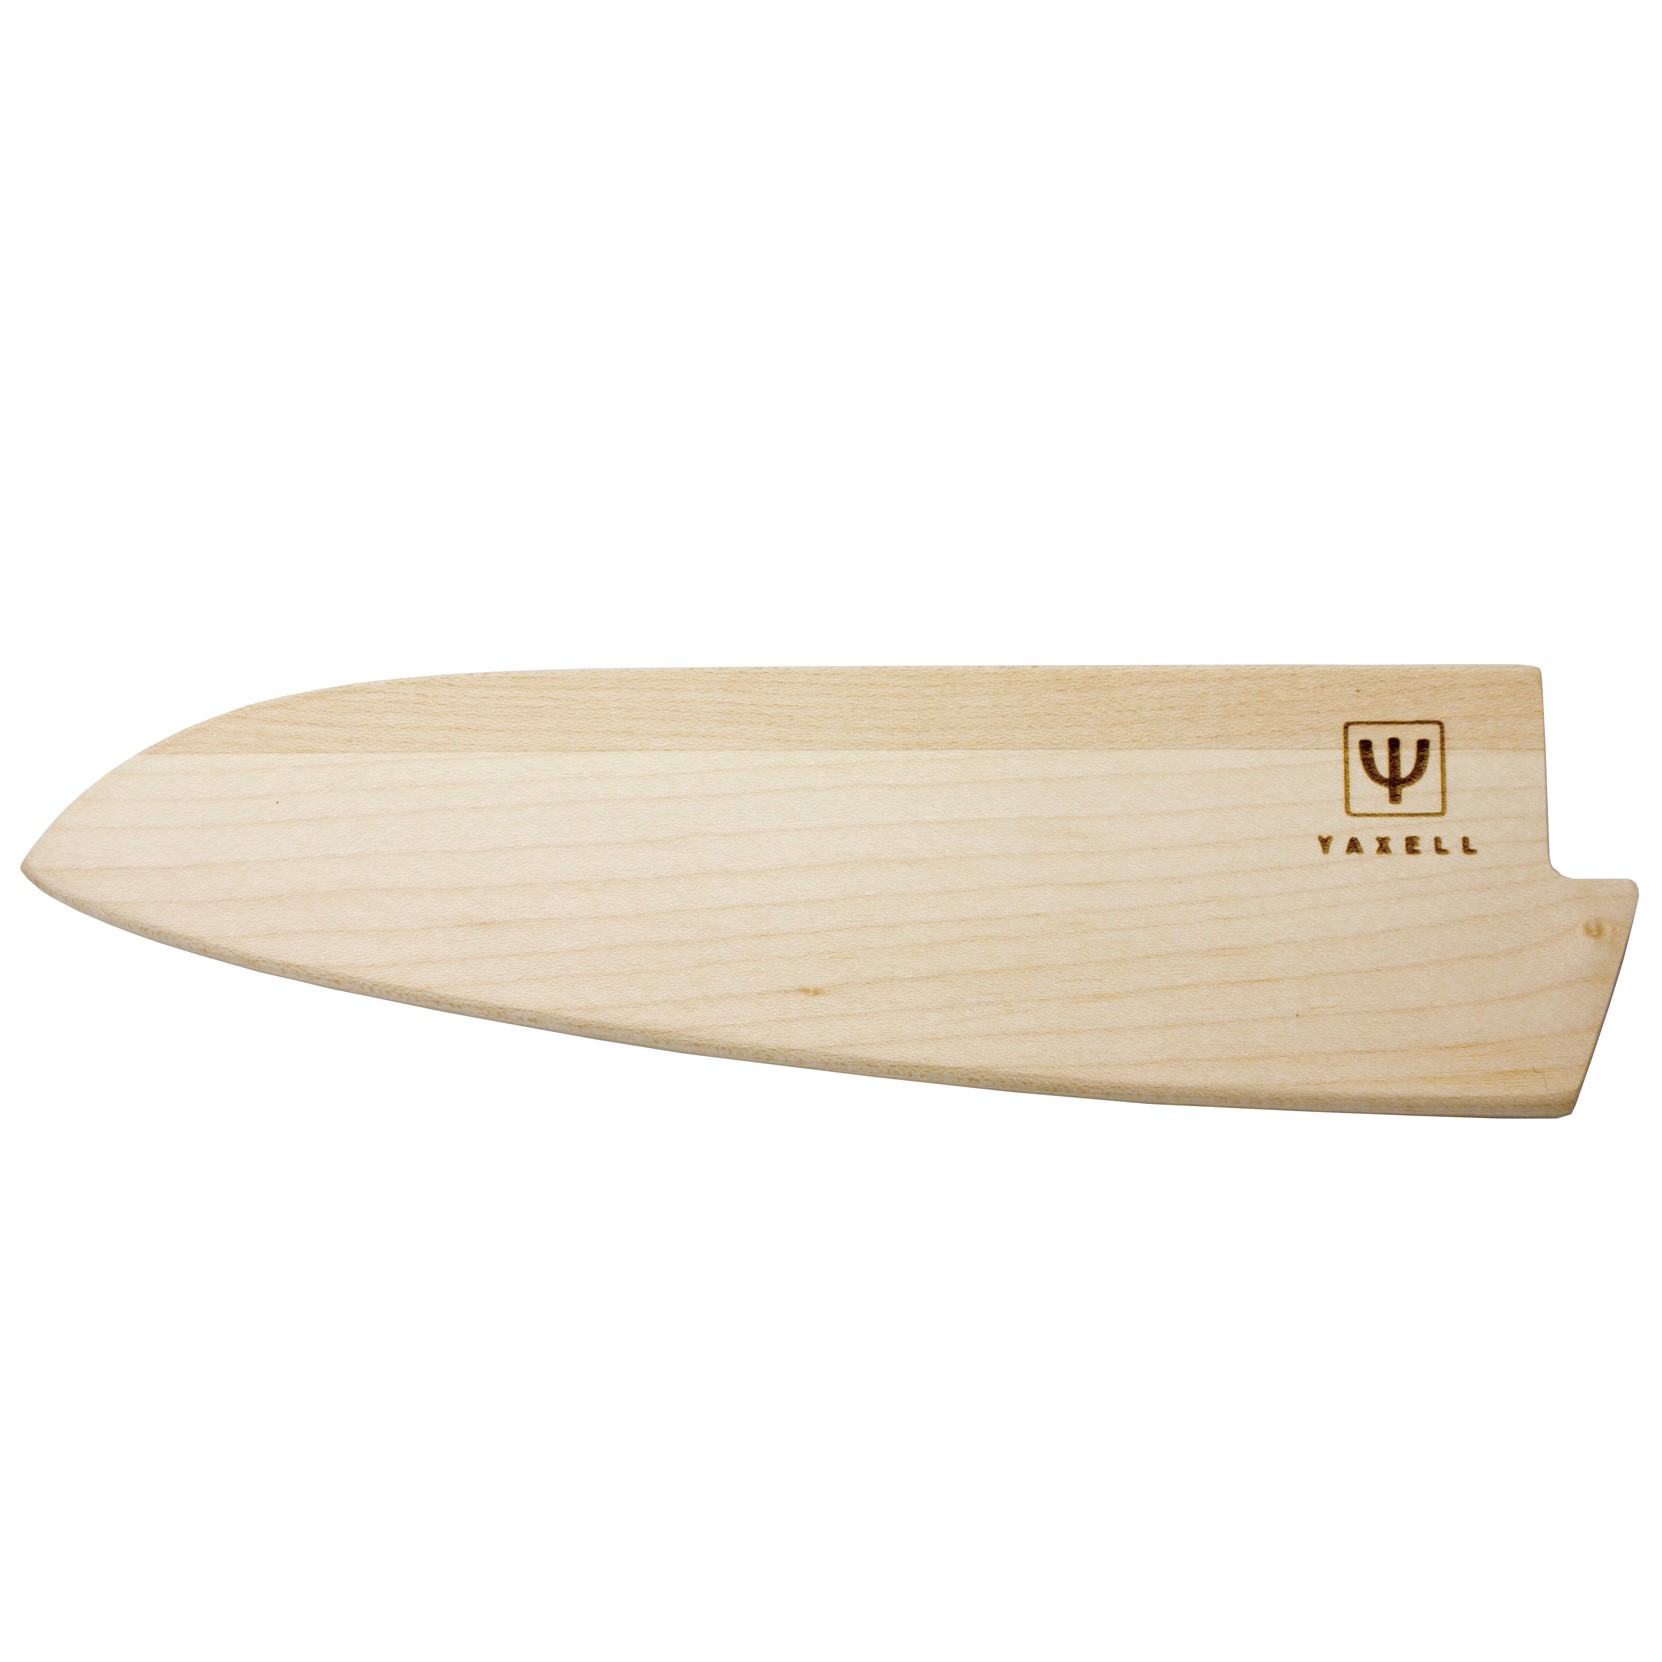 Ochranné pouzdro na nůž, pro kuchařský nůž 20 cm, dřevo, Yaxell